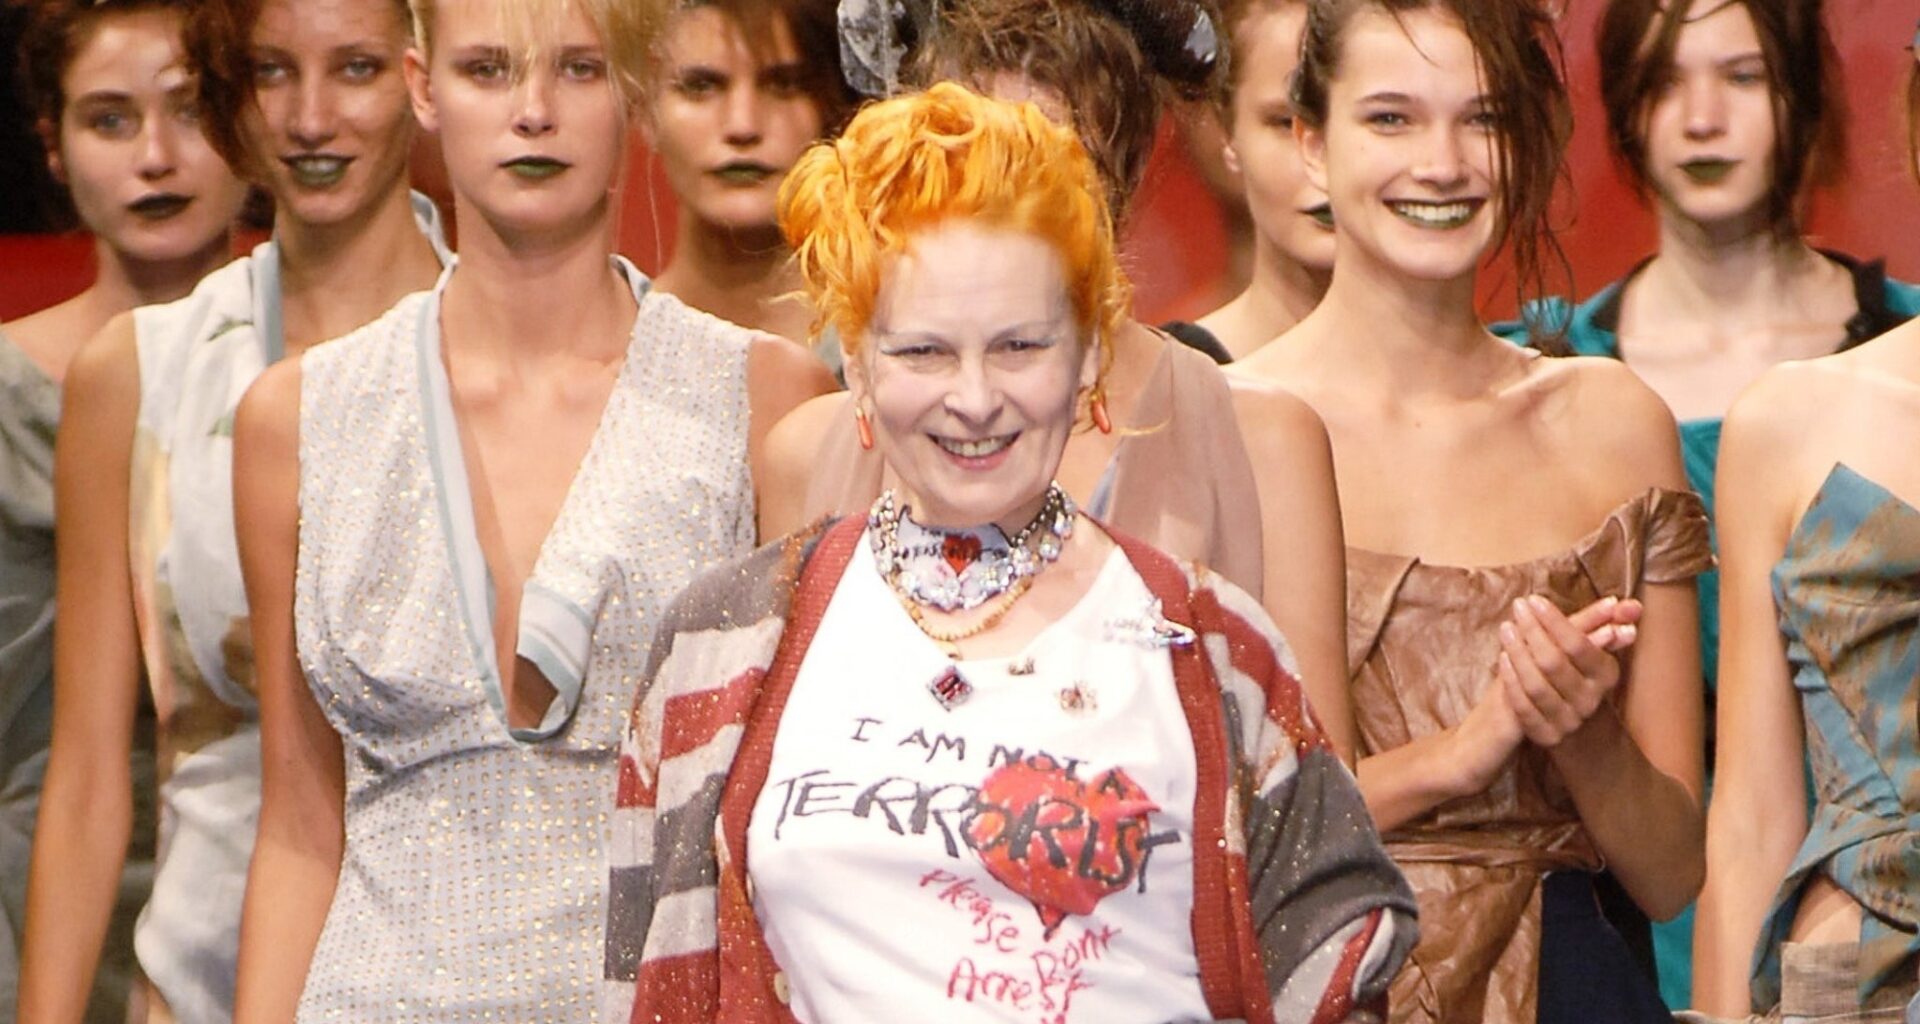 Iconic Wednesday: Fashion Designer Vivienne Westwood